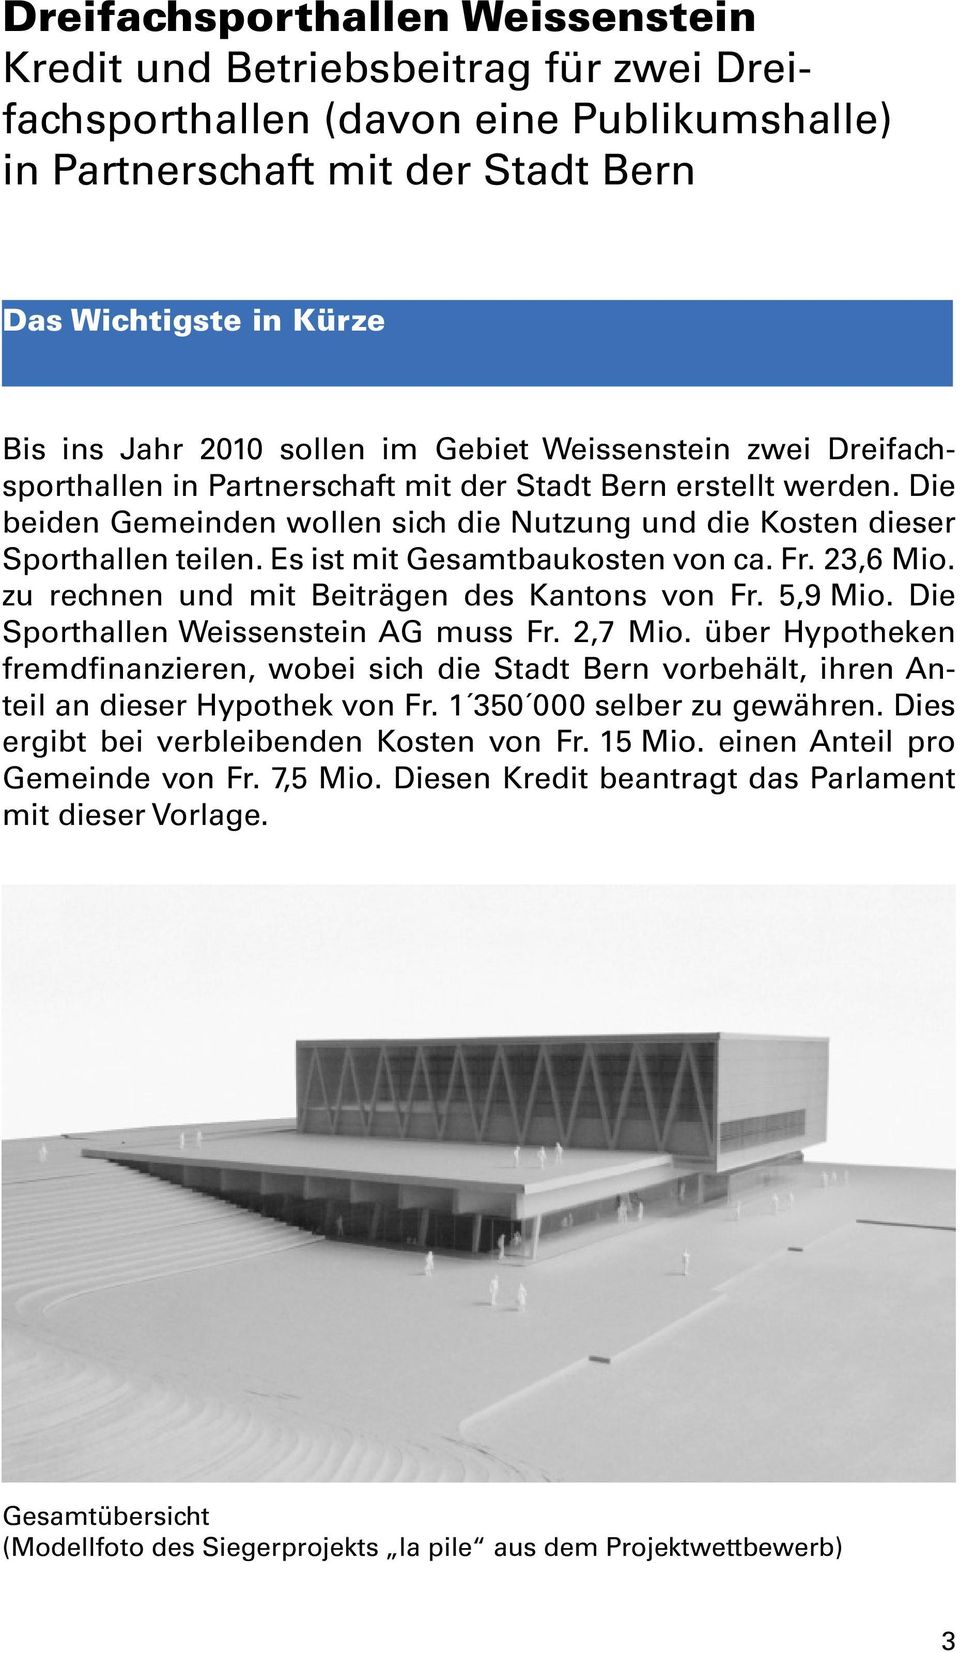 Es ist mit Gesamtbaukosten von ca. Fr. 23,6 Mio. zu rechnen und mit Beiträgen des Kantons von Fr. 5,9 Mio. Die Sporthallen Weissenstein AG muss Fr. 2,7 Mio.